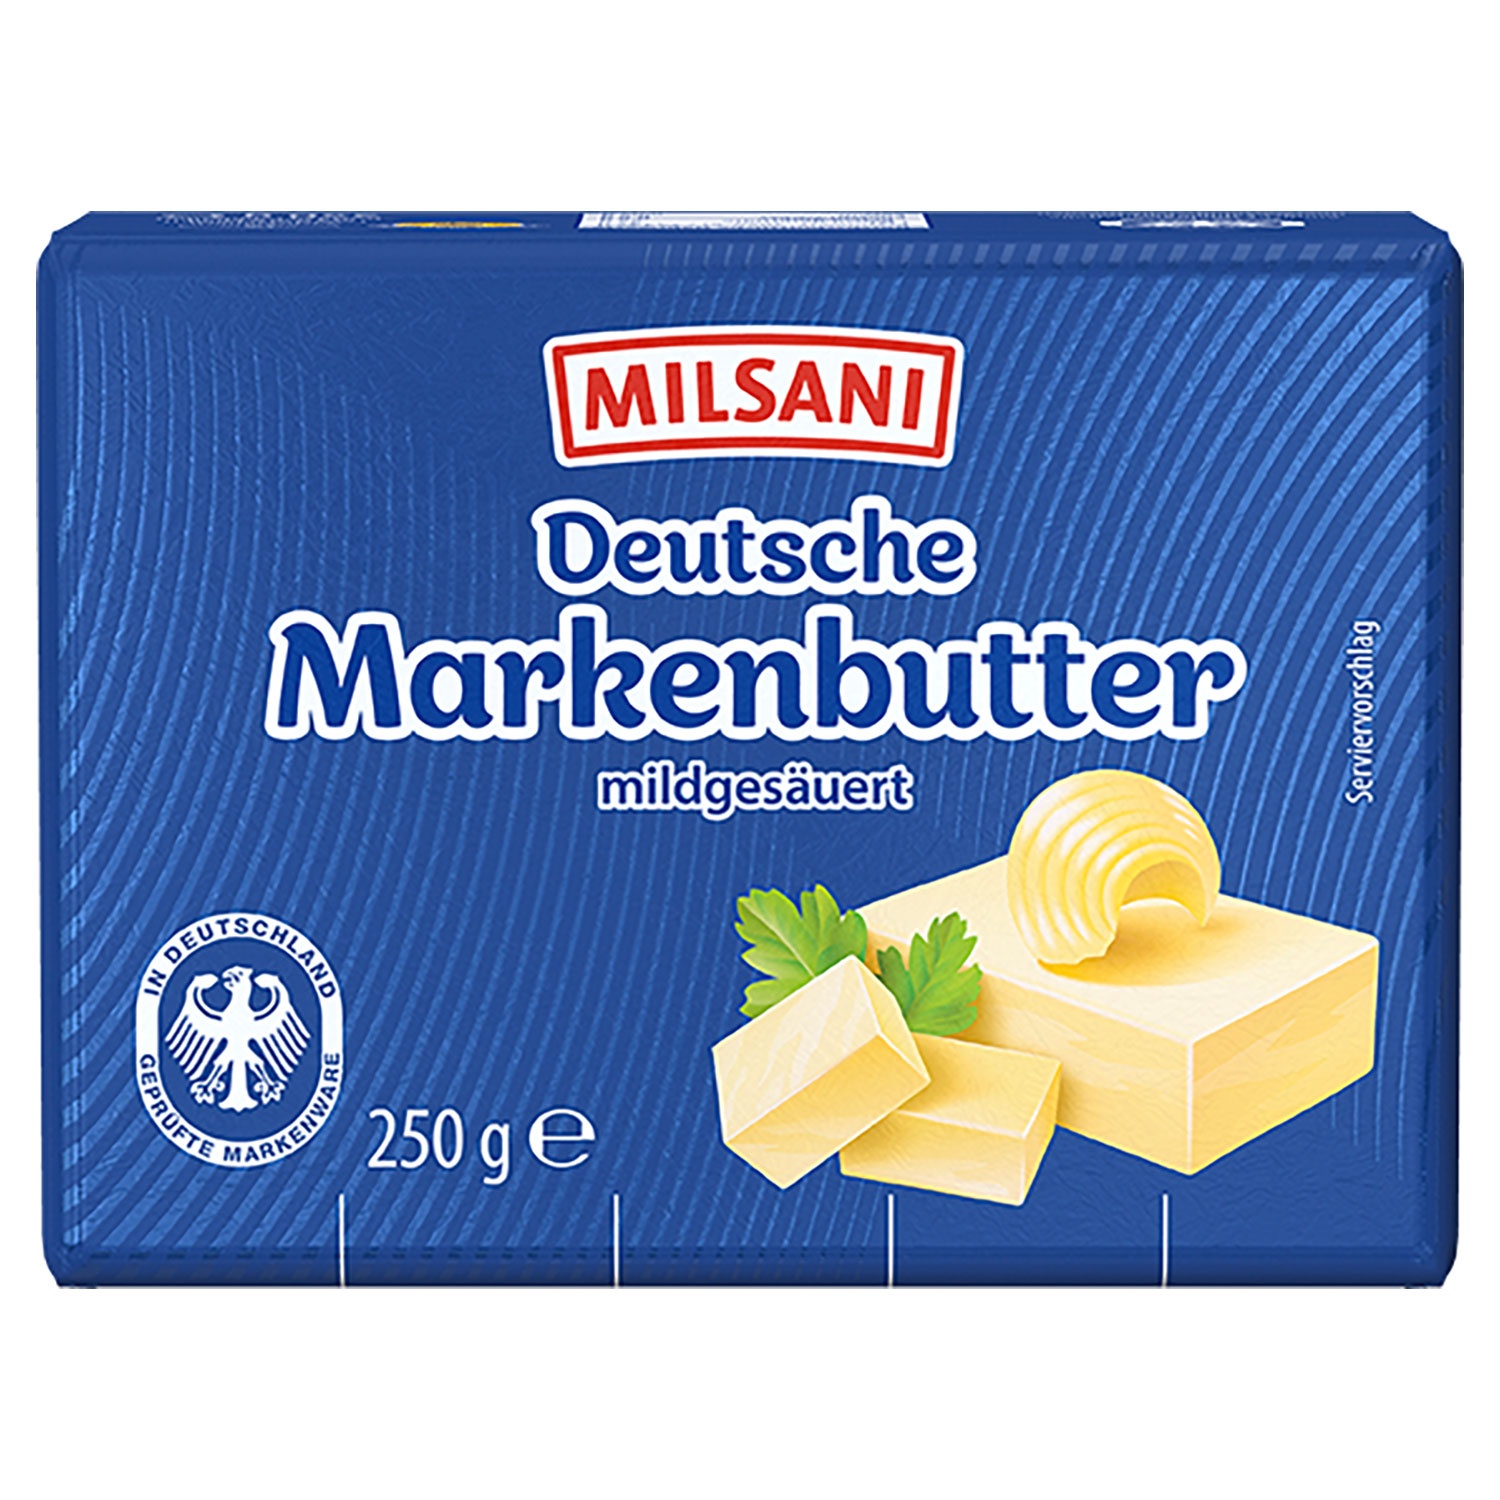 MILSANI Deutsche Markenbutter 250 g